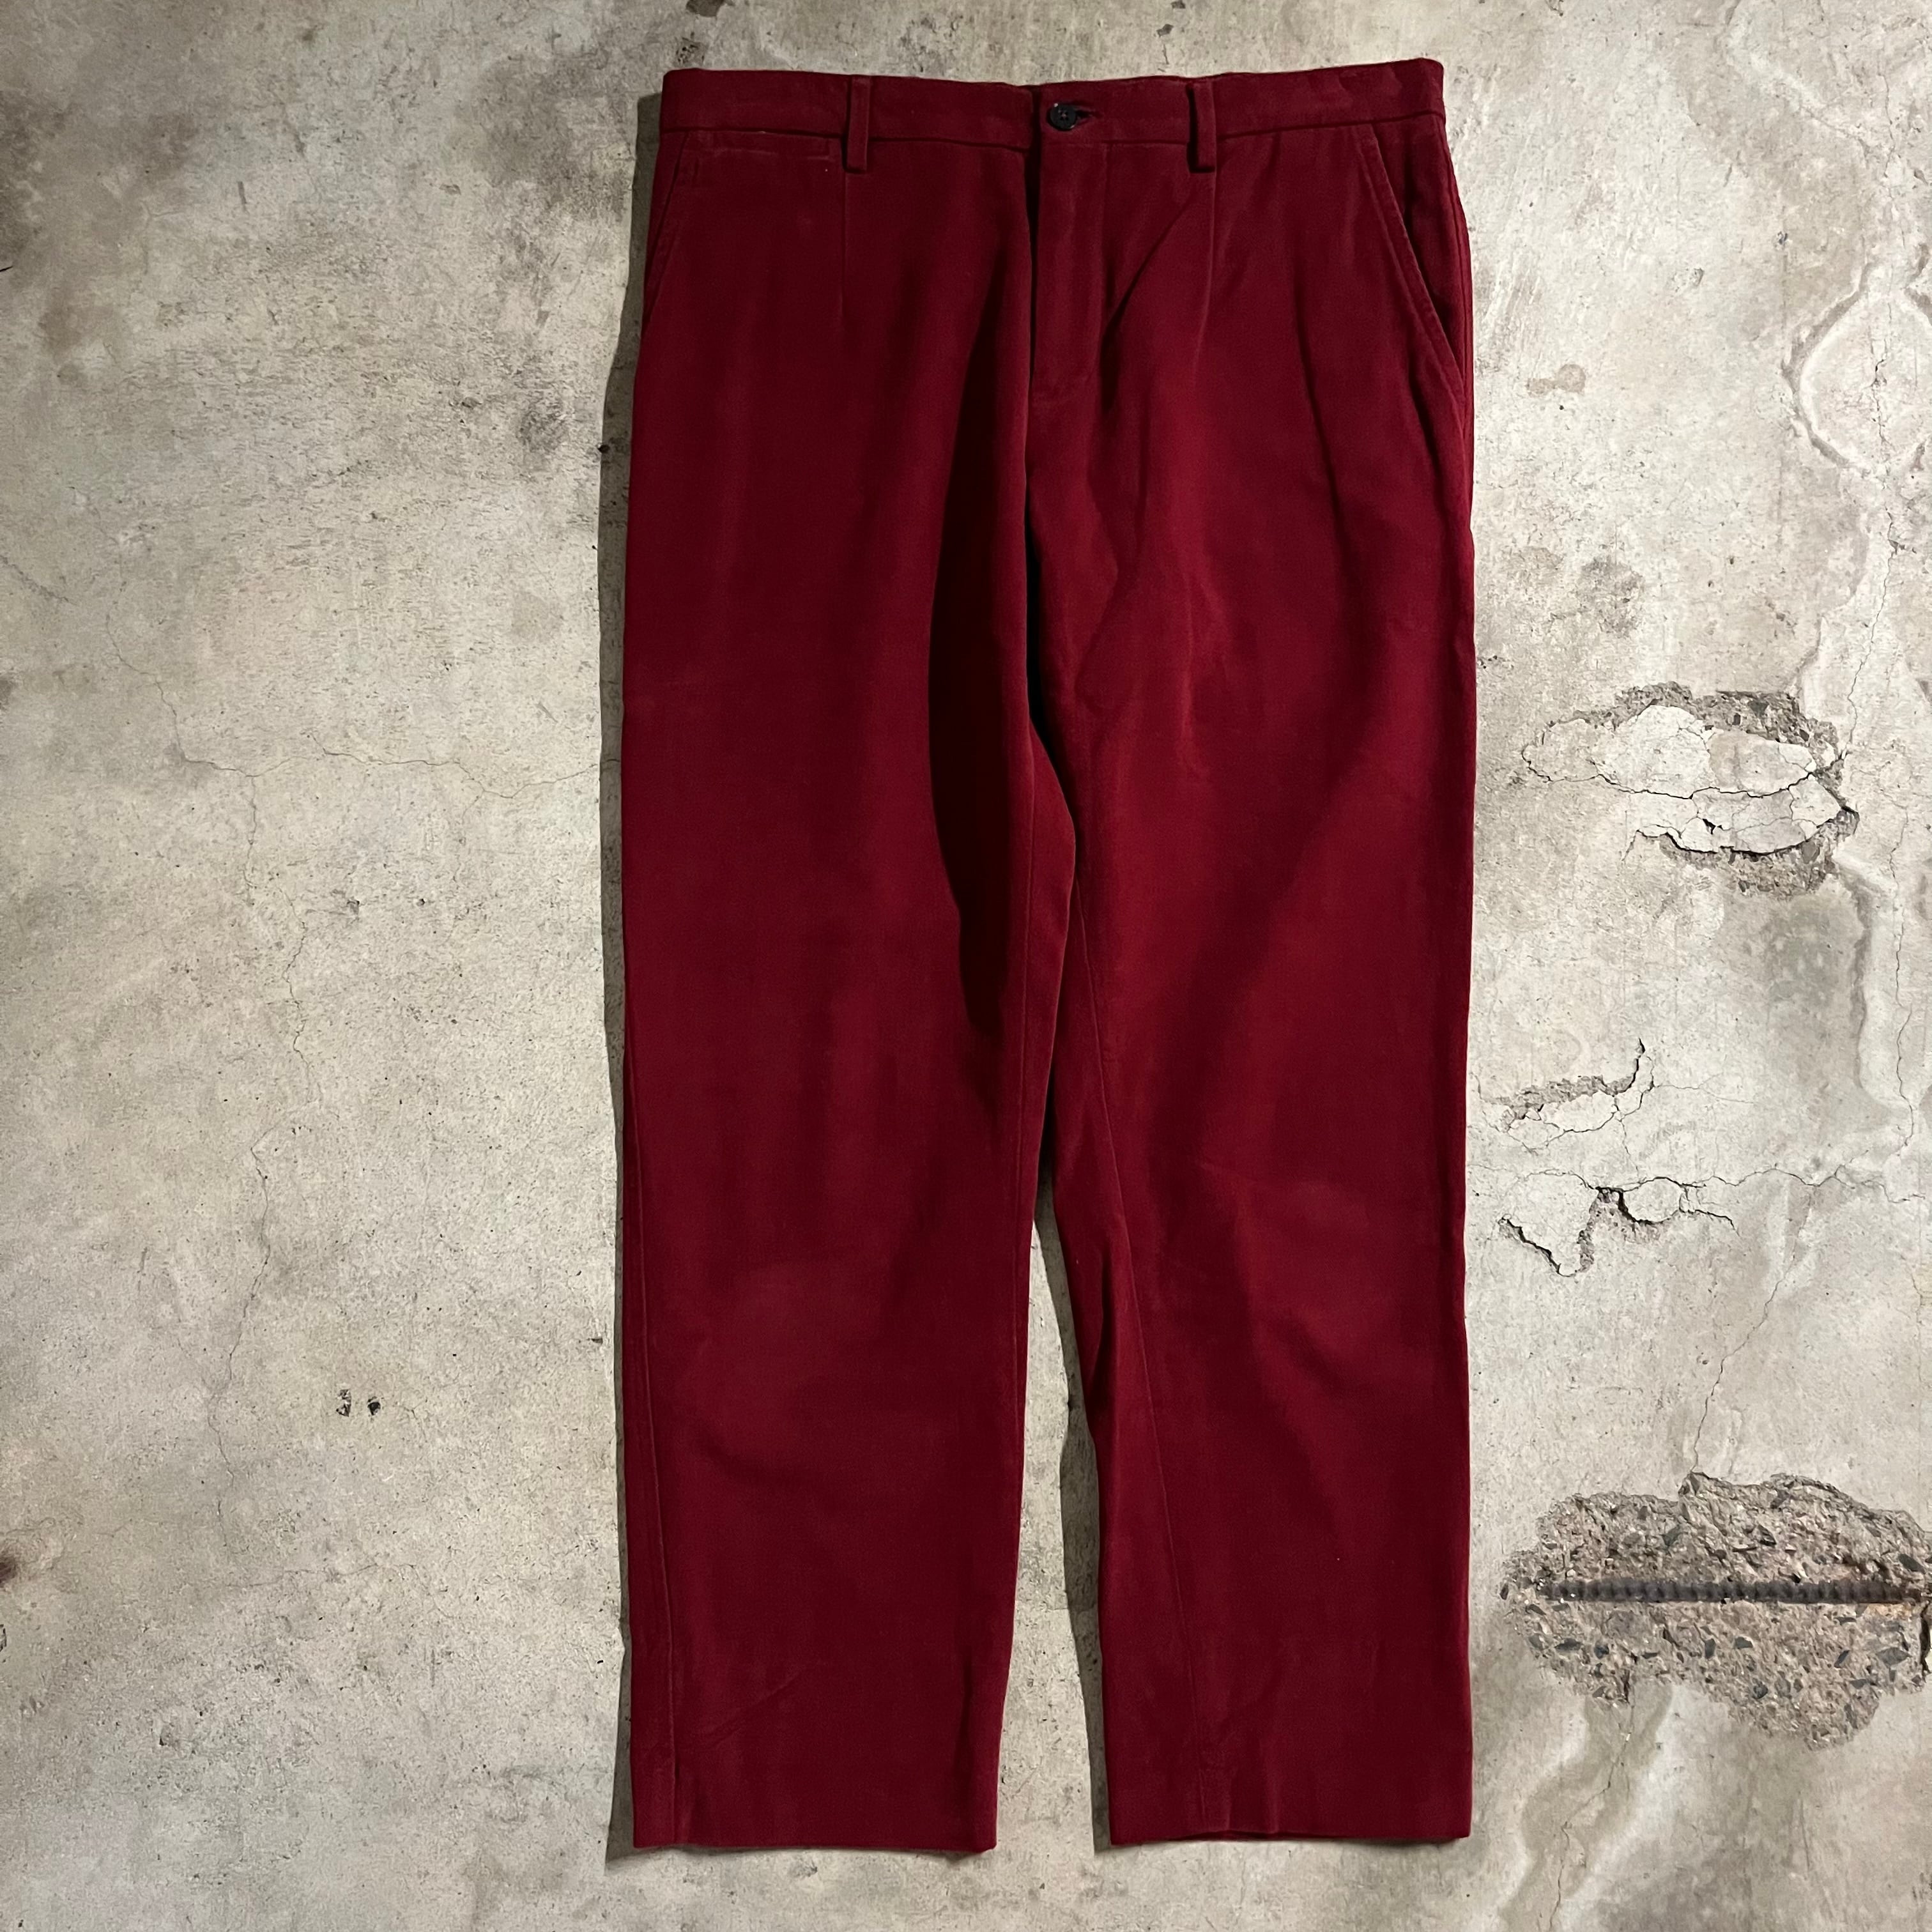 〖DOLCE&GABBANA〗made in Italy red cotton slacks pants/ドルチェアンドガッパーナ イタリア製 赤  コットン スラックス/msize/#0427/osaka | 〚ETON_VINTAGE〛 powered by BASE